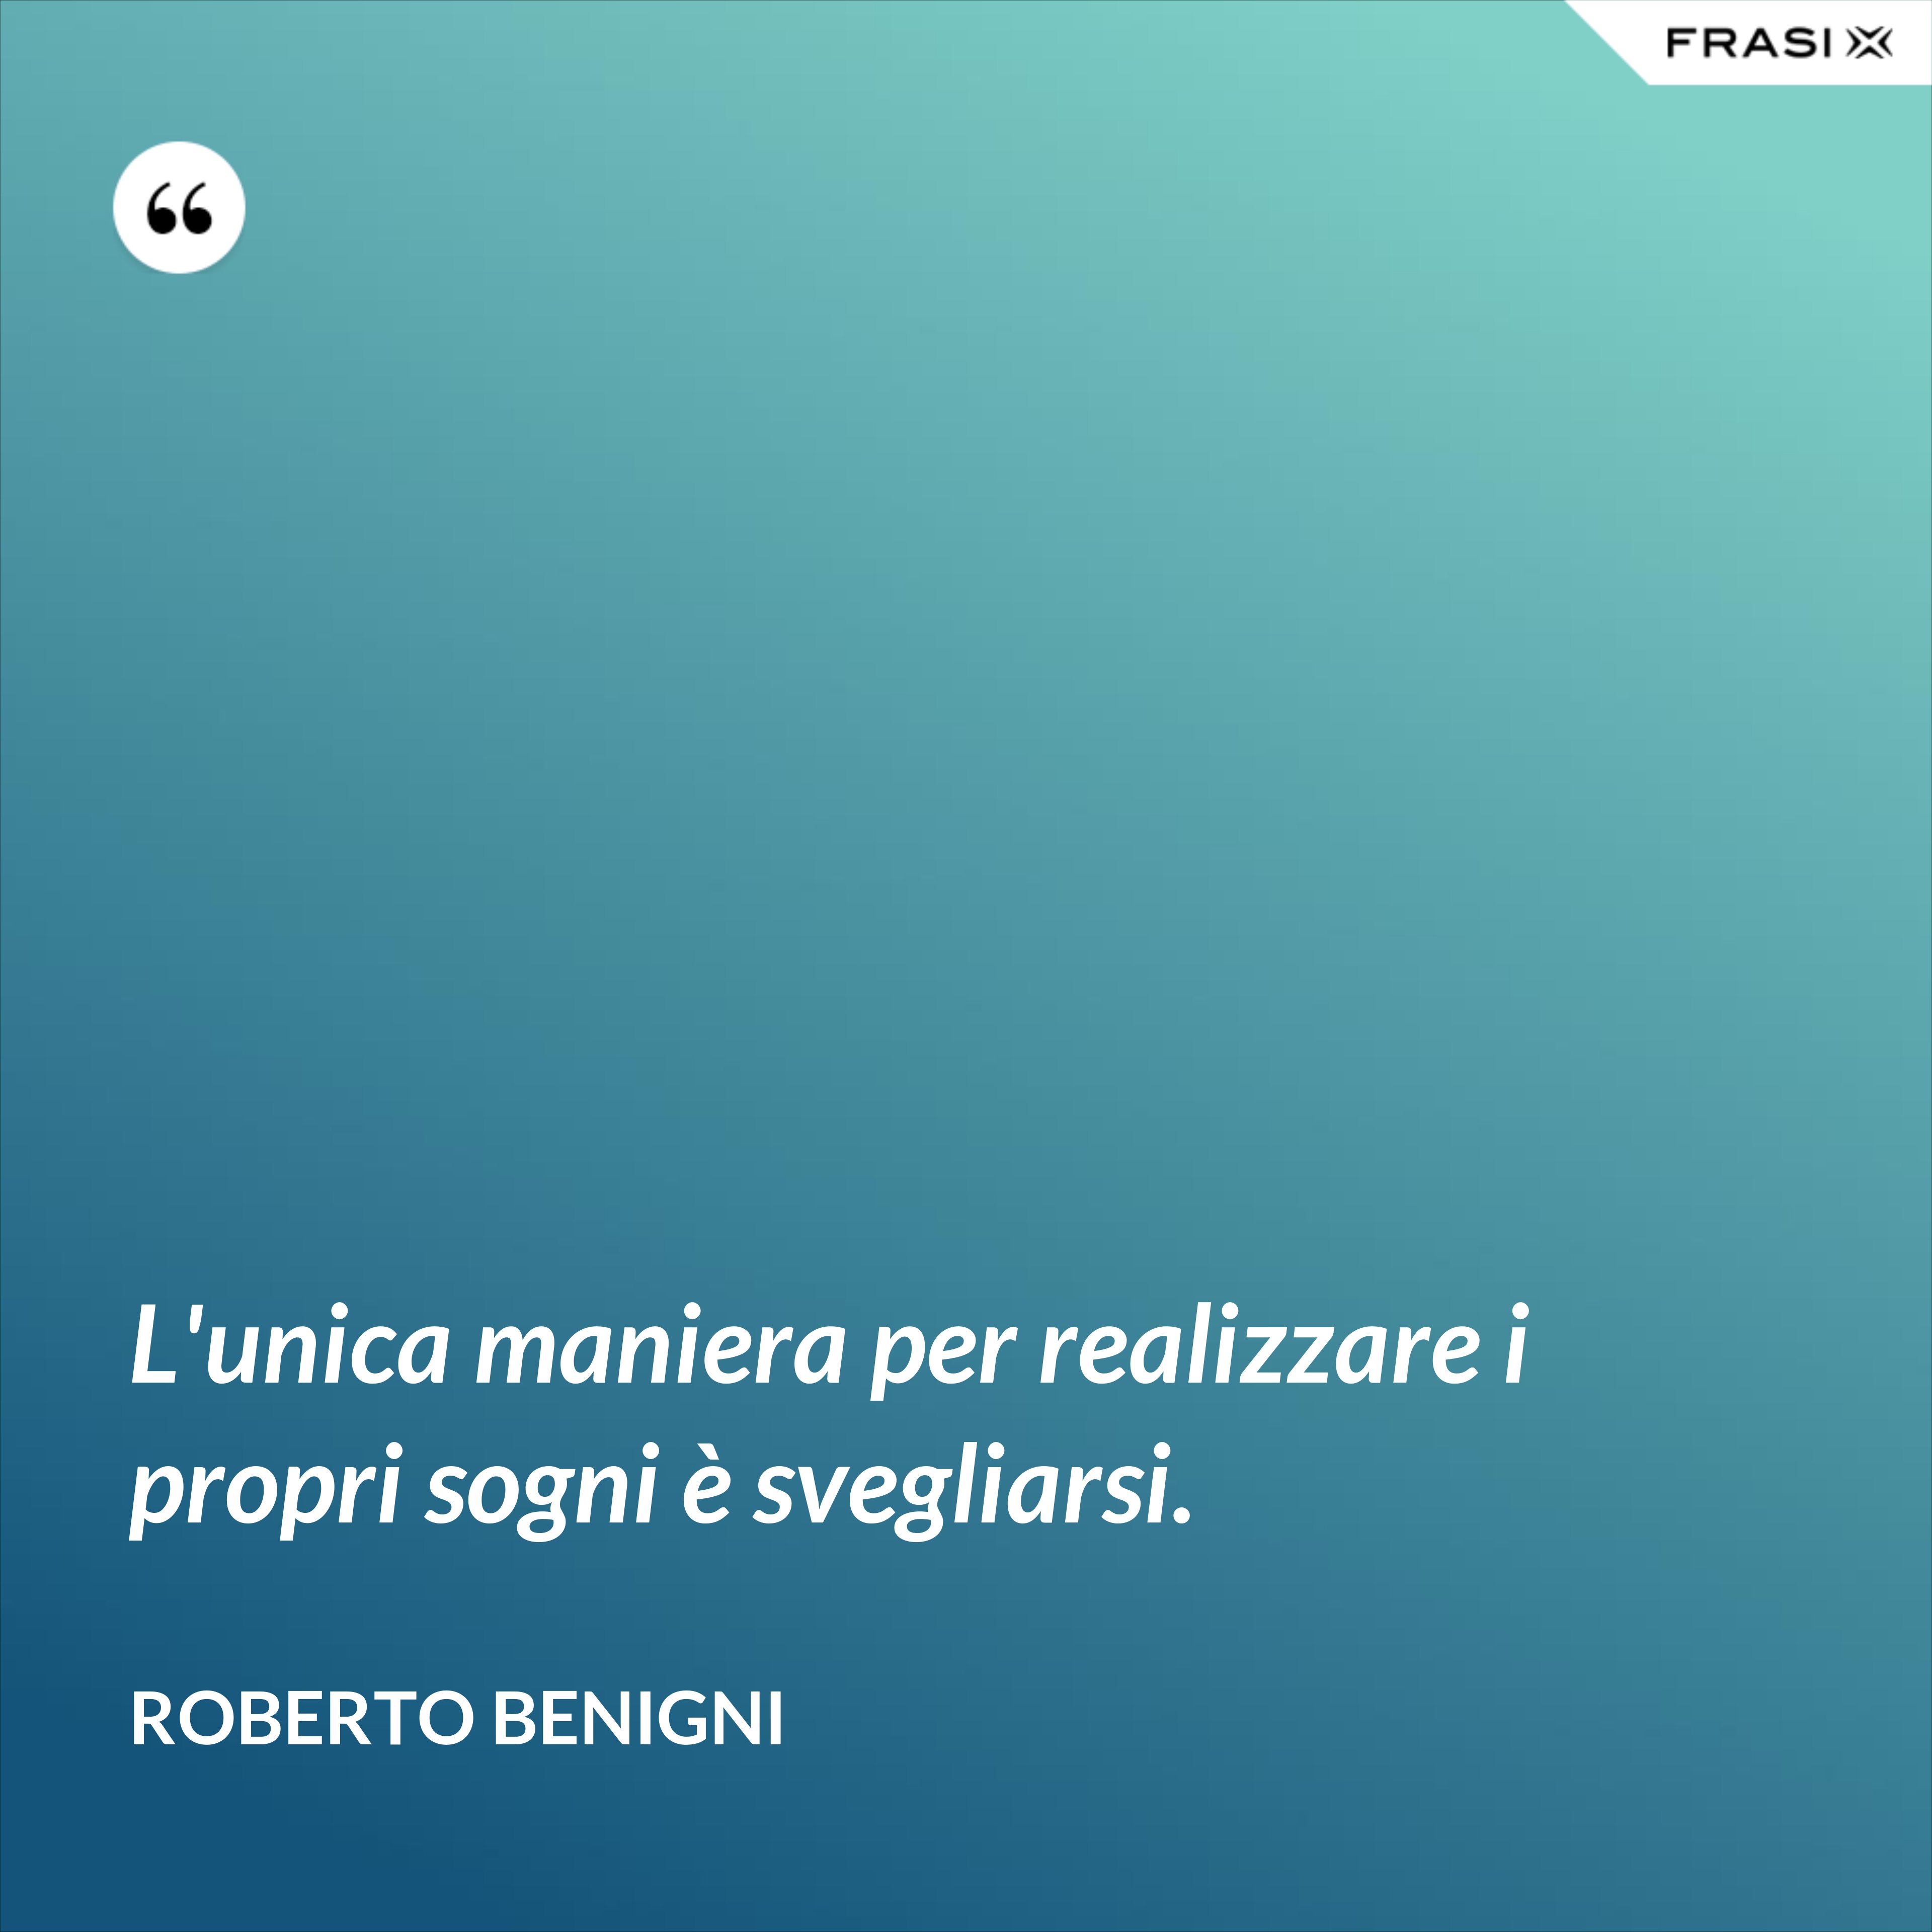 L'unica maniera per realizzare i propri sogni è svegliarsi. - Roberto Benigni